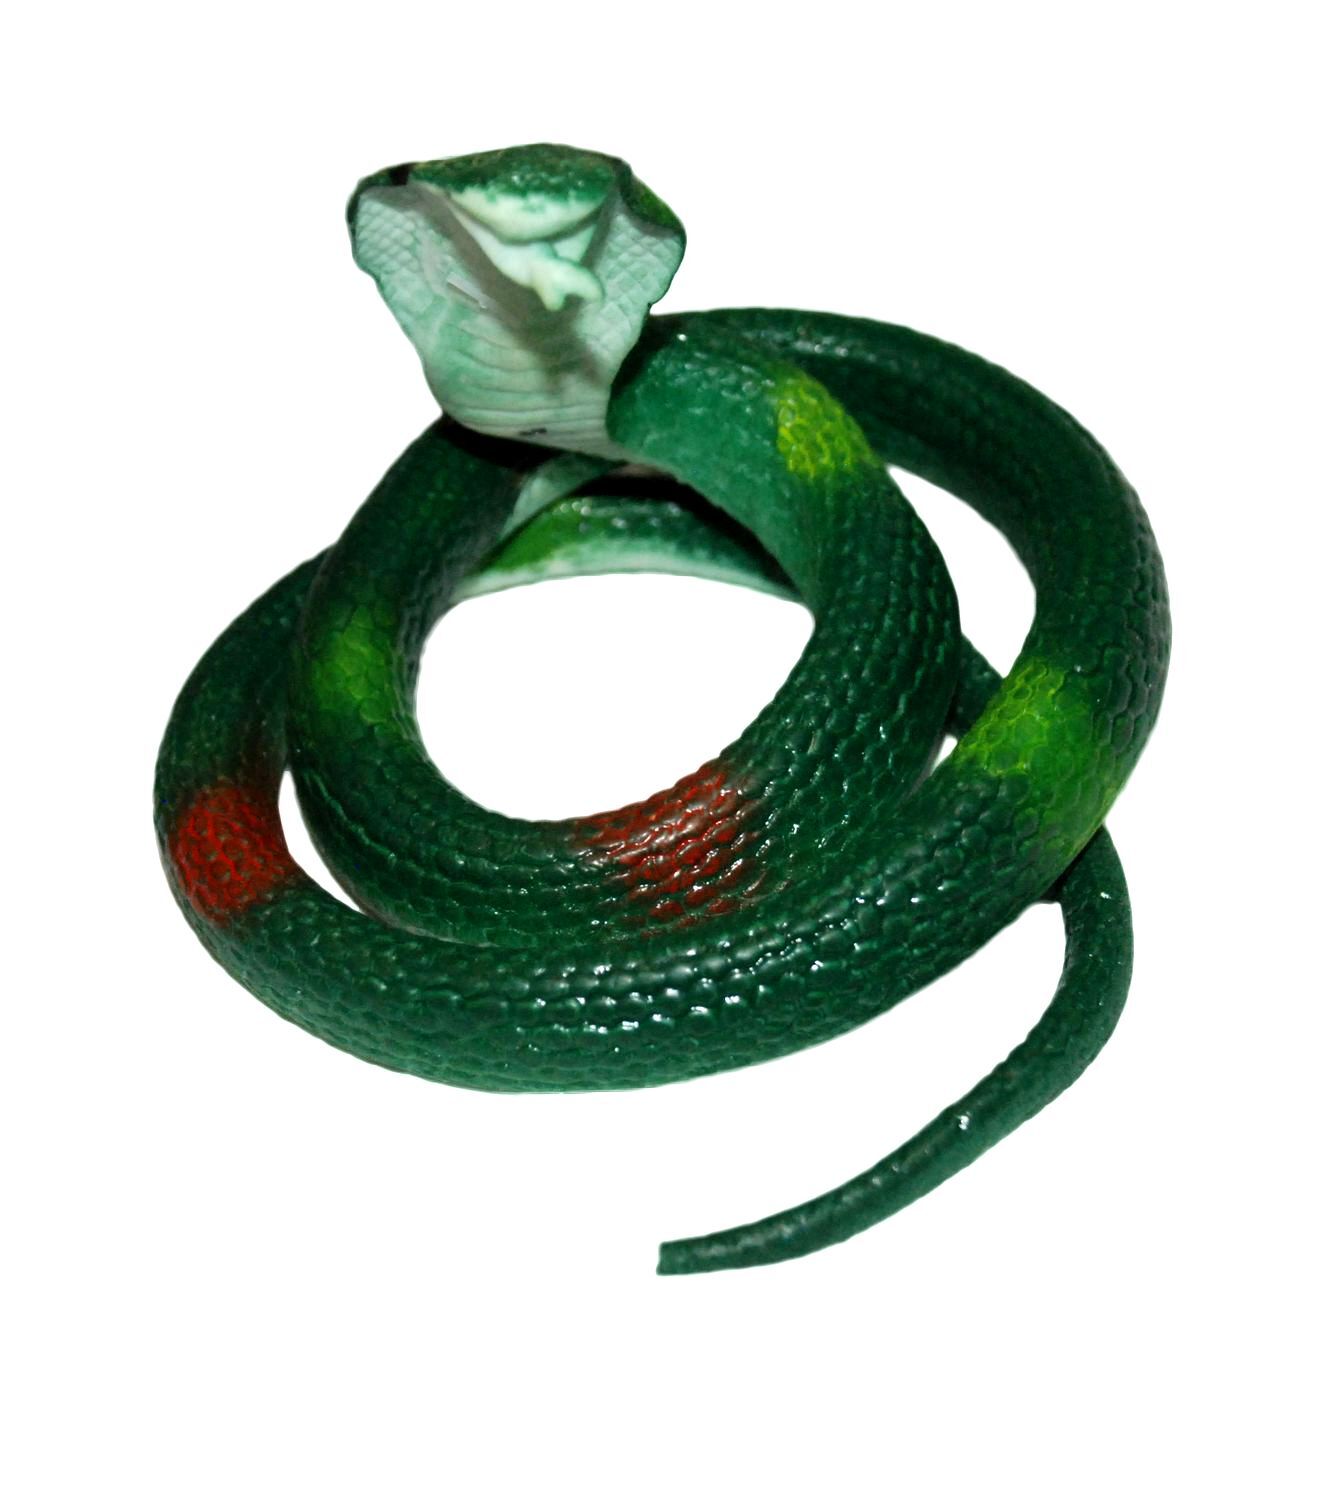 Змеи игрушки купить. Антистресс змейка тянучка. Змея игрушка тянучка зеленая Кобра. Резиновые тянучки игрушки змей. Резиновая змея тянучка игрушка.